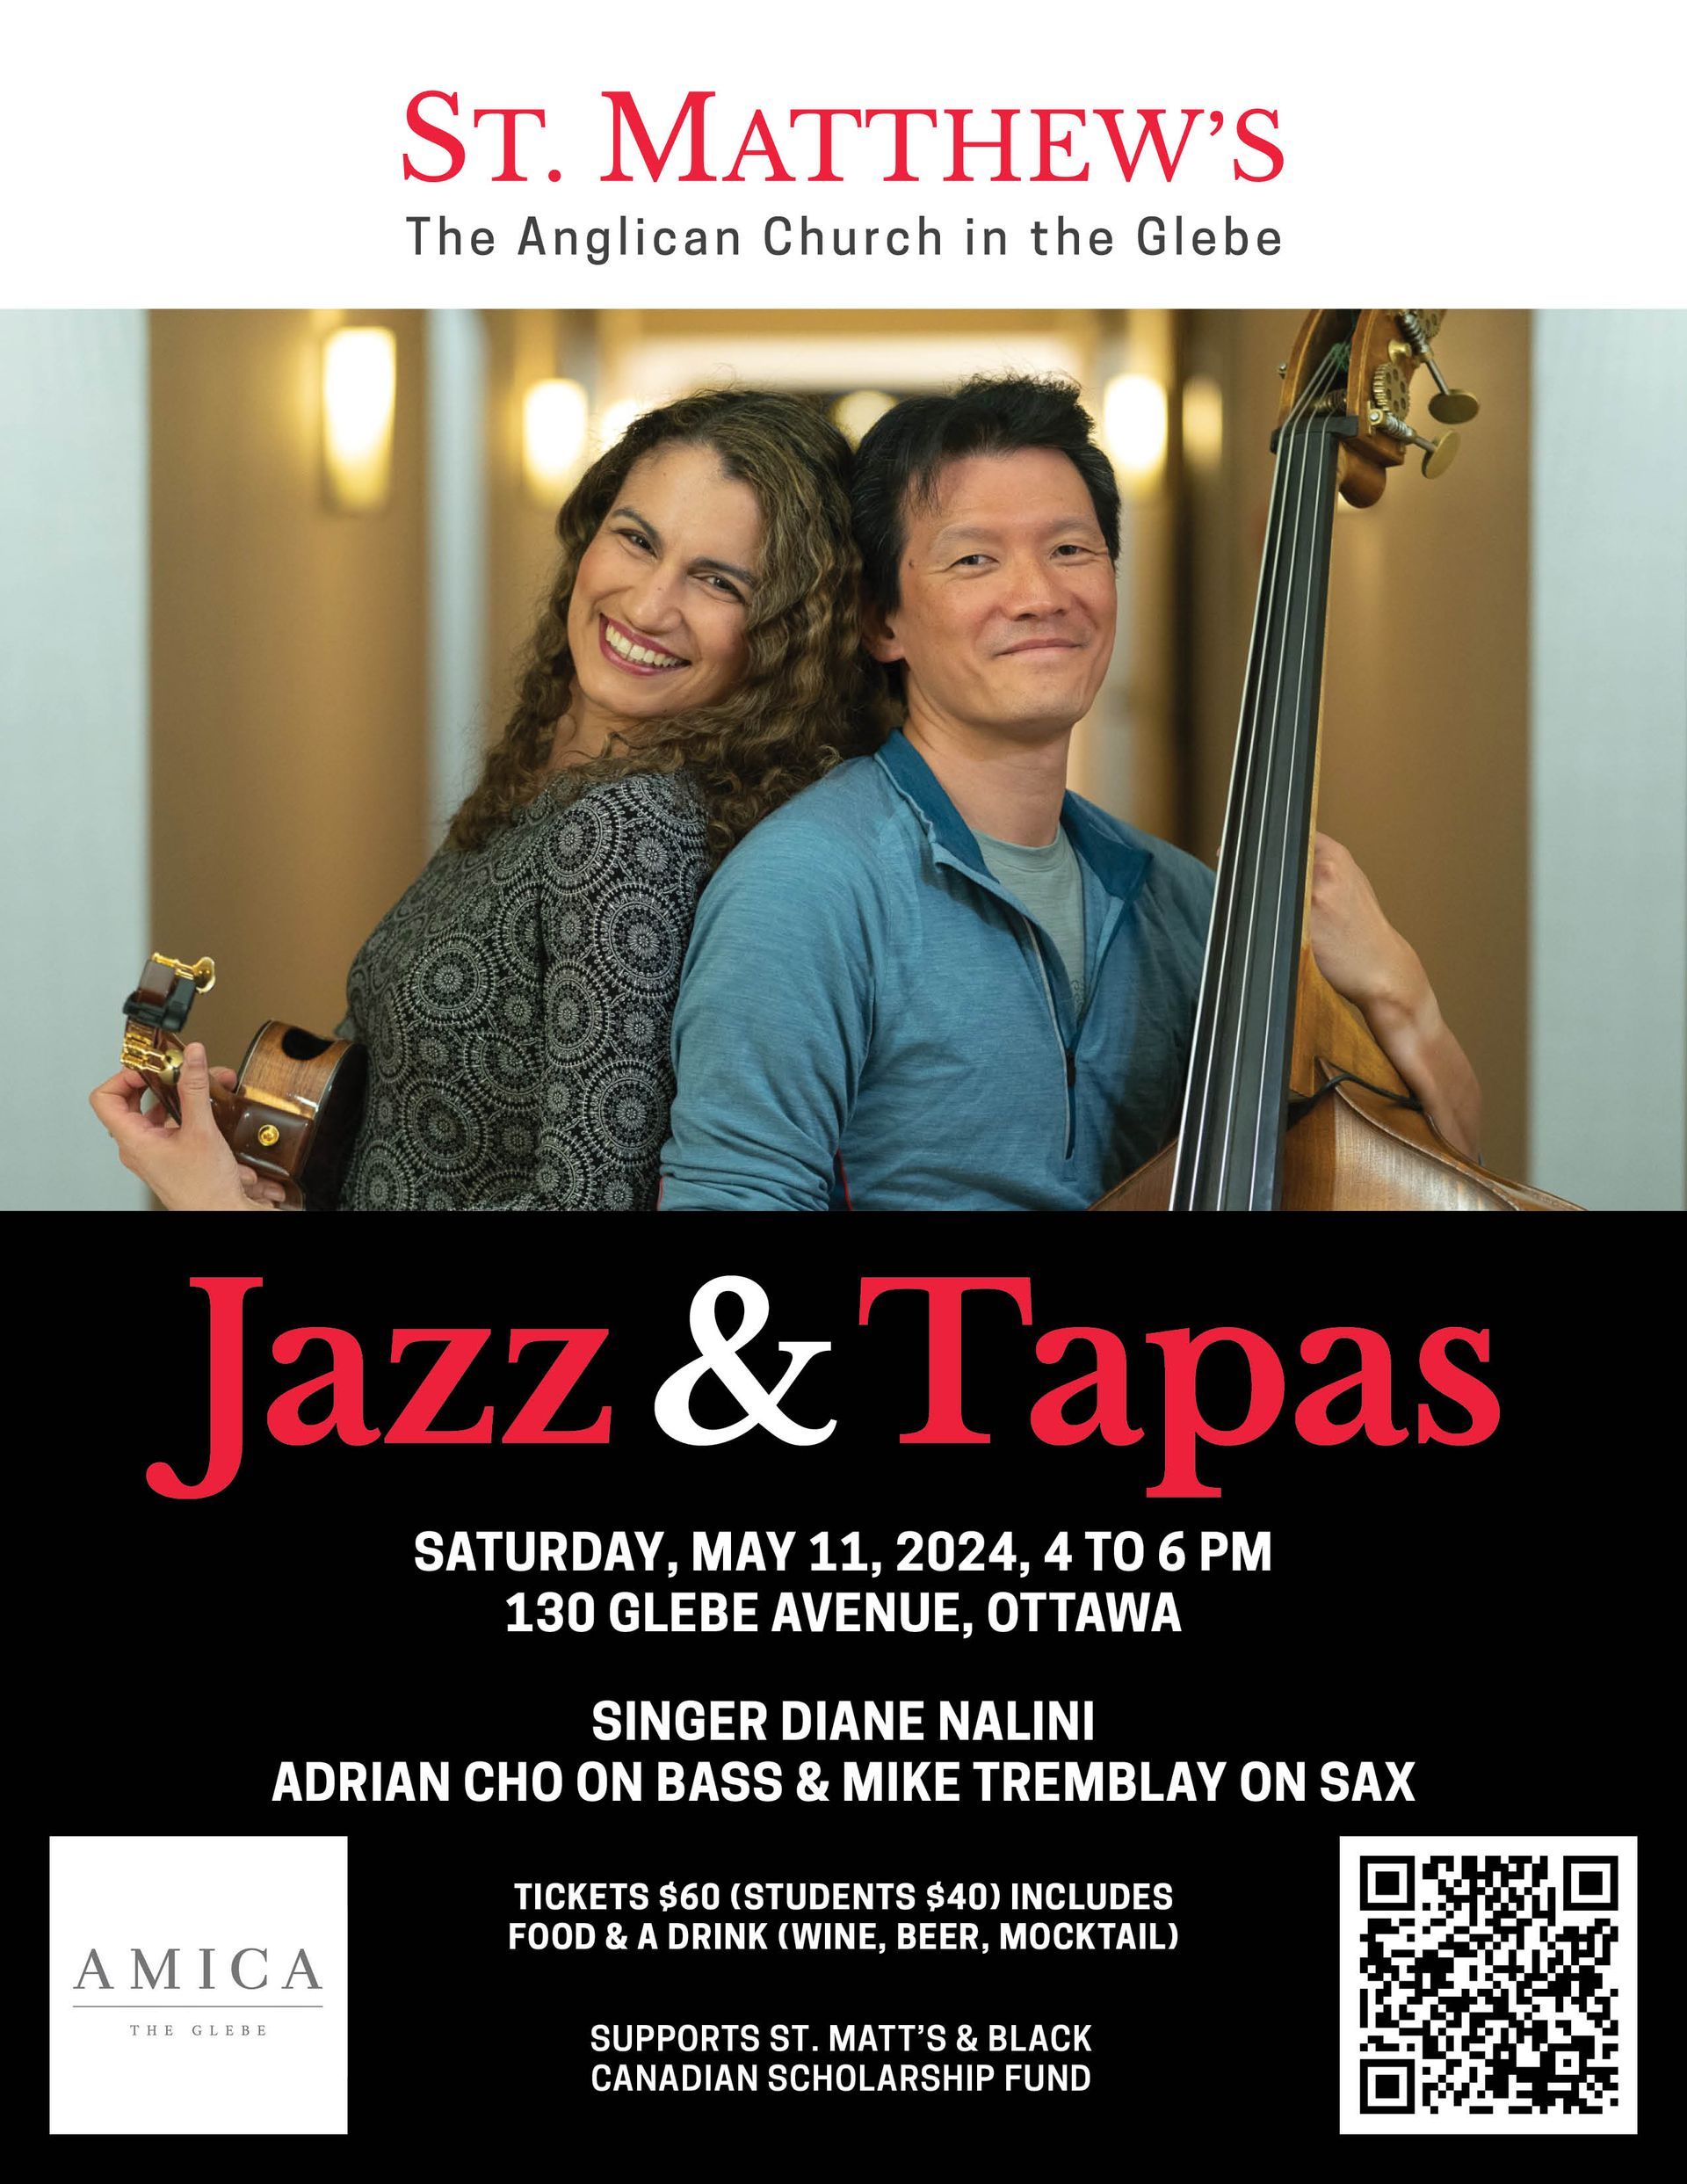 Jazz & Tapas poster